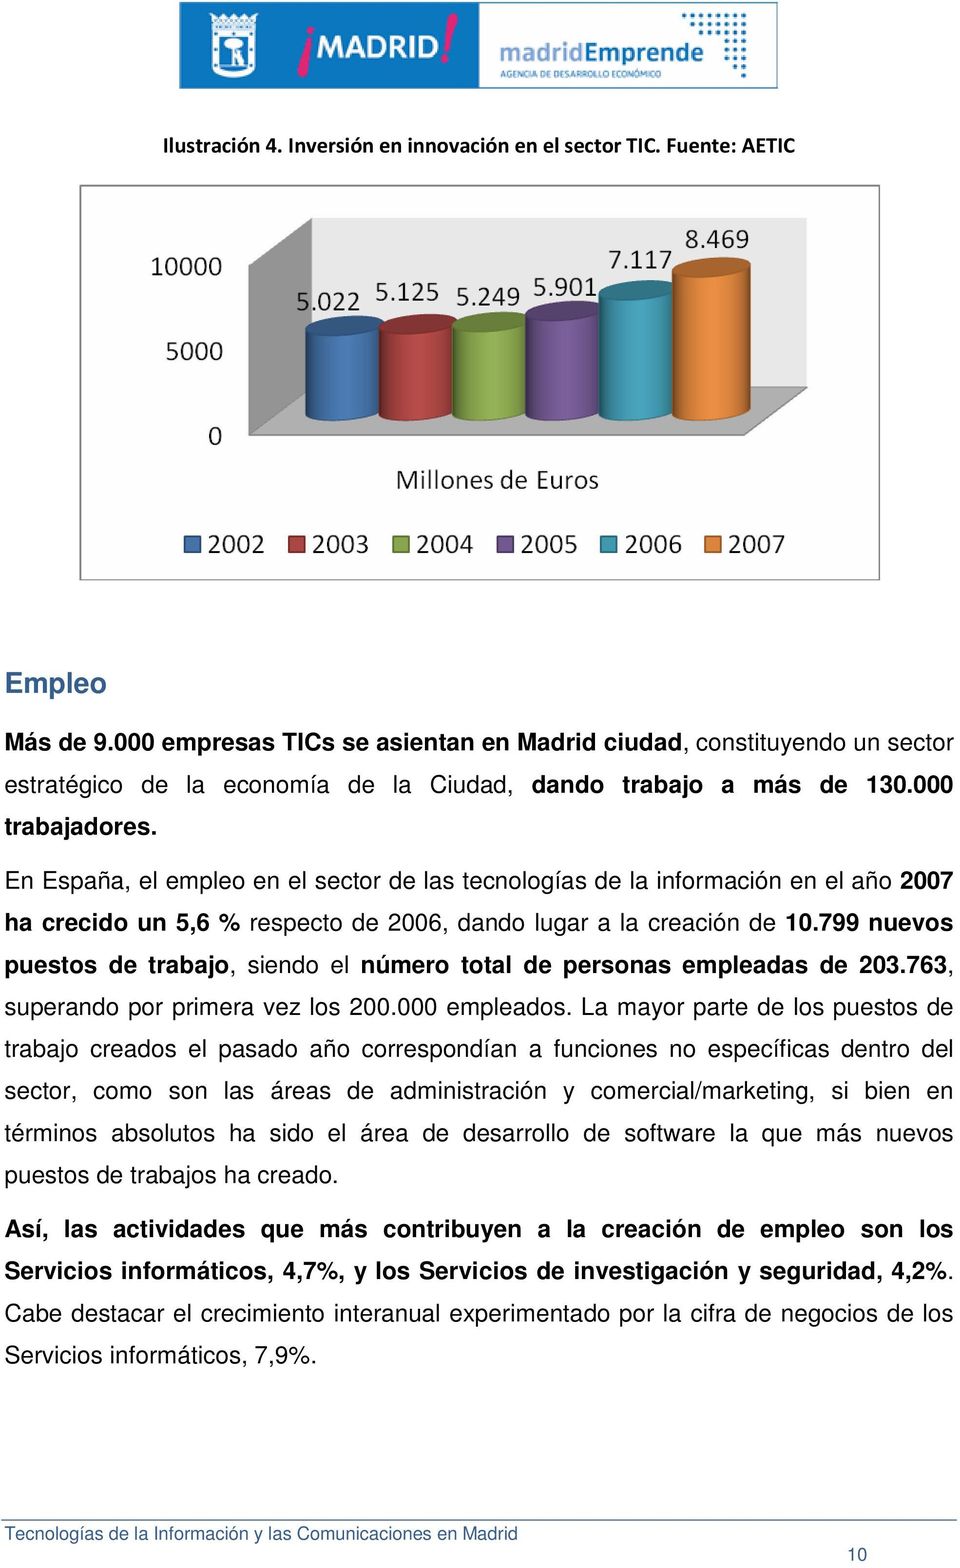 En España, el empleo en el sector de las tecnologías de la información en el año 2007 ha crecido un 5,6 % respecto de 2006, dando lugar a la creación de 10.